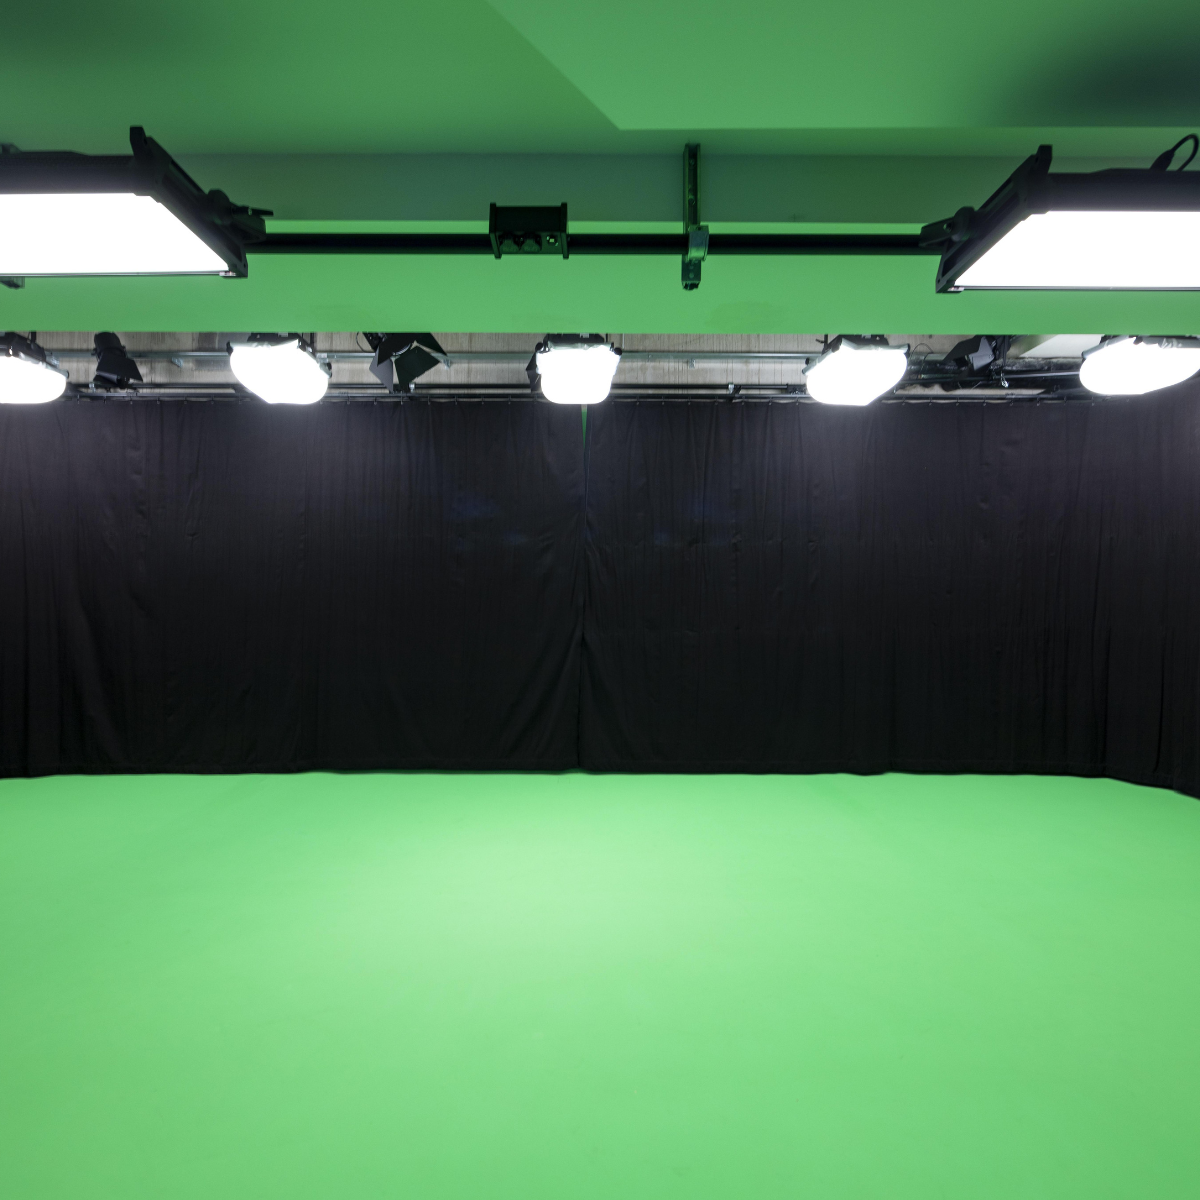 Videoproductie studio voor professionals